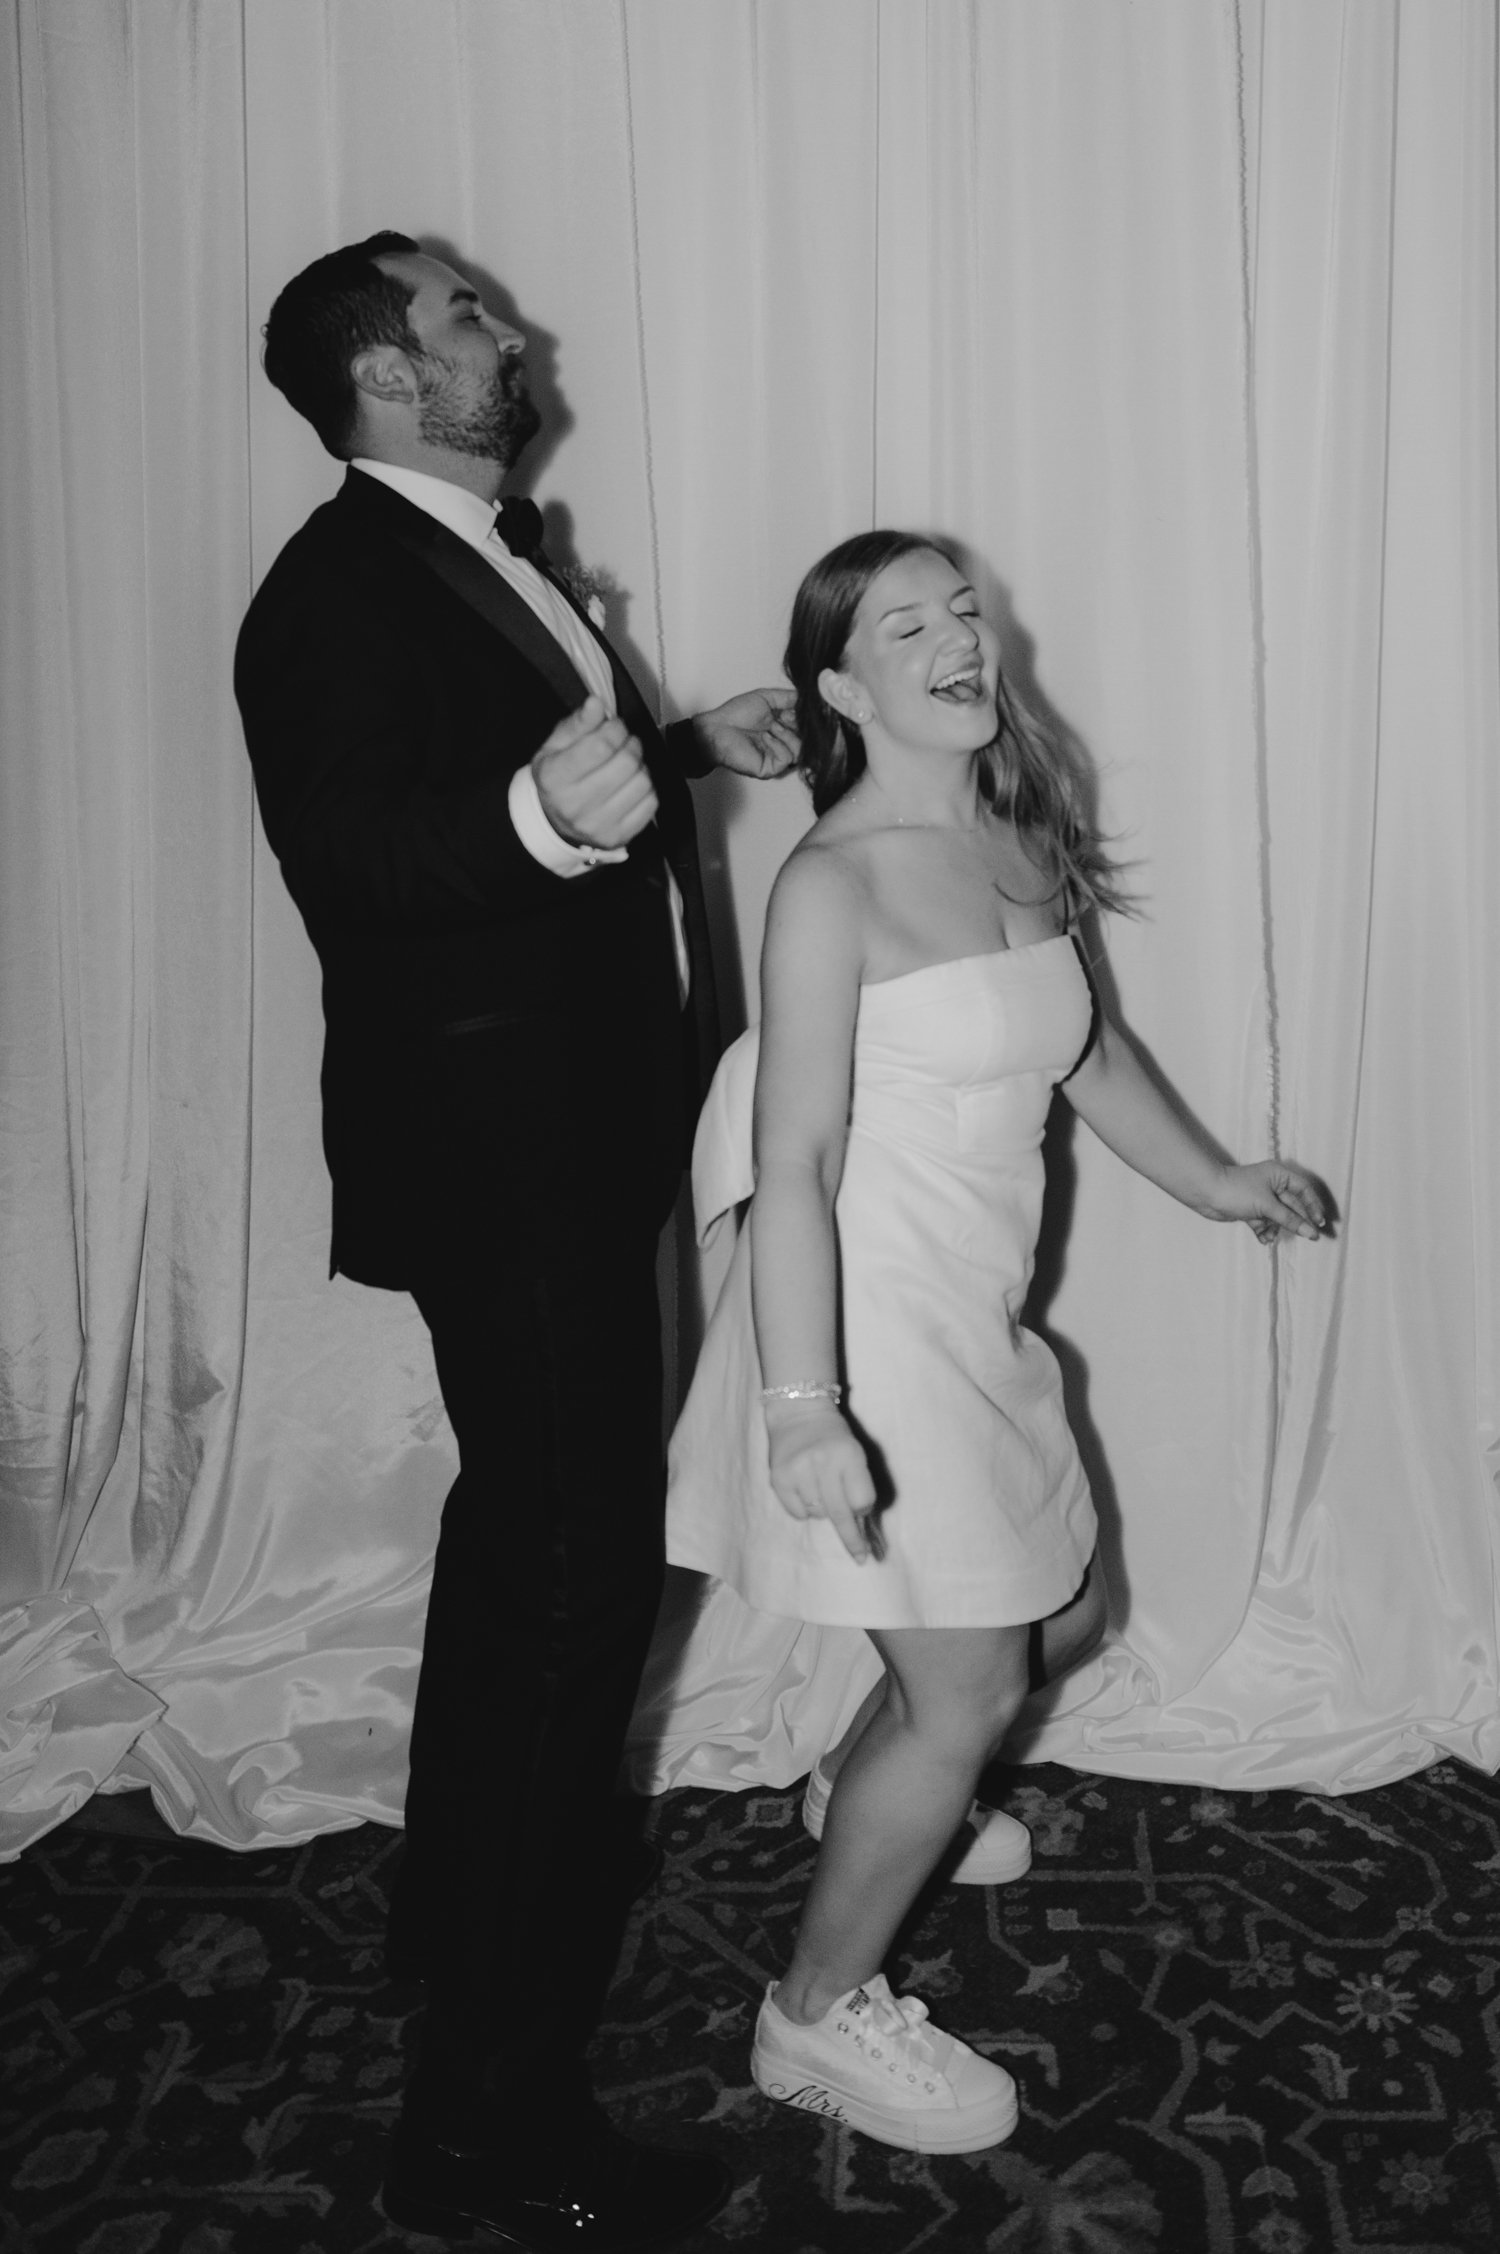 Hyatt regency wedding reception photos